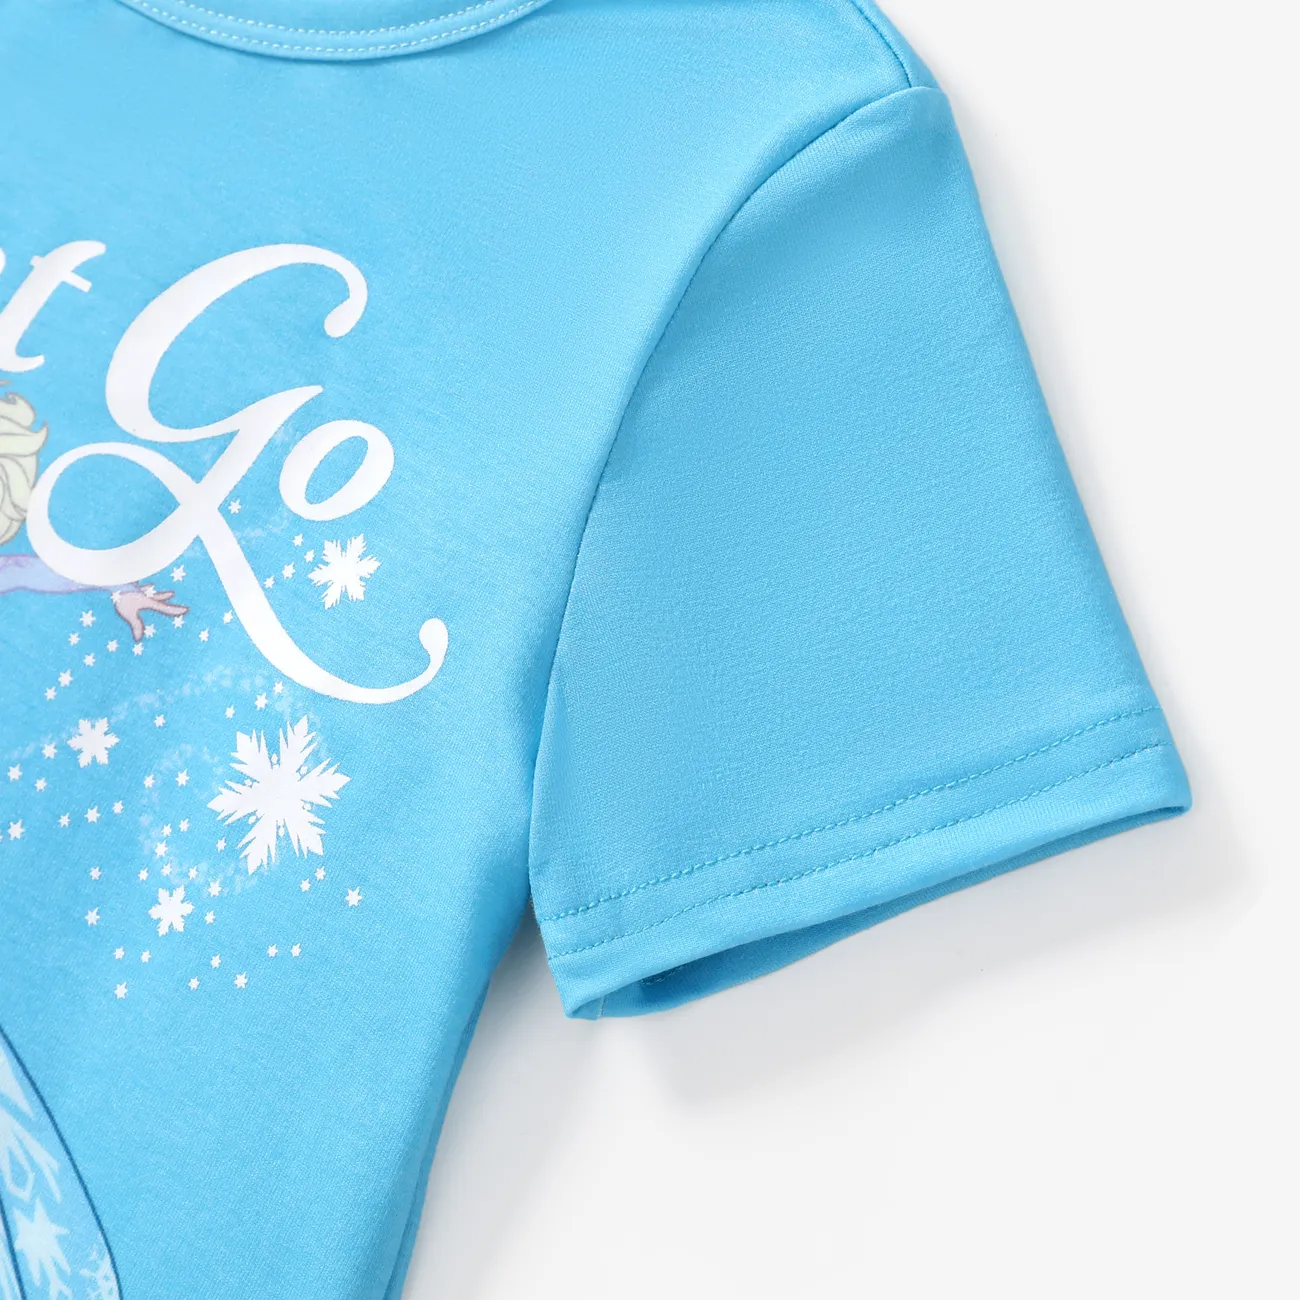 La Reine des neiges de Disney Enfant en bas âge Fille Enfantin Manches courtes T-Shirt Bleu big image 1